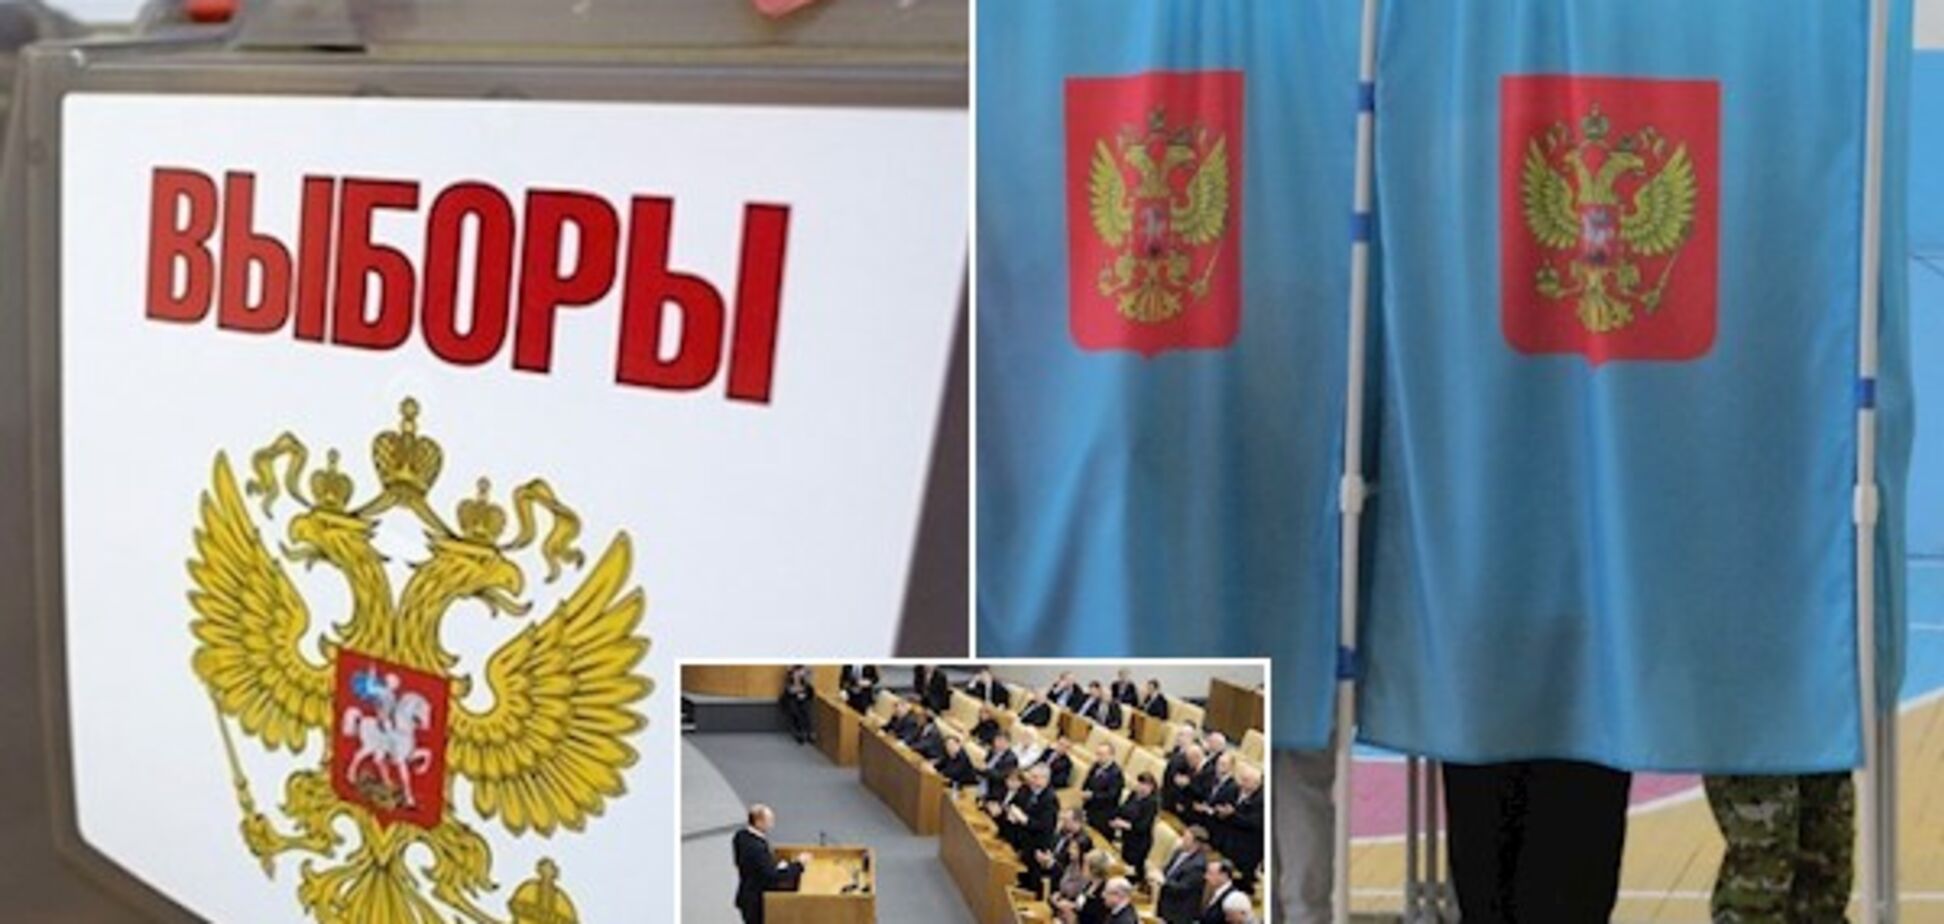 'Соврали': у Путина иностранное СМИ обвинили в нарушениях на 'выборах'